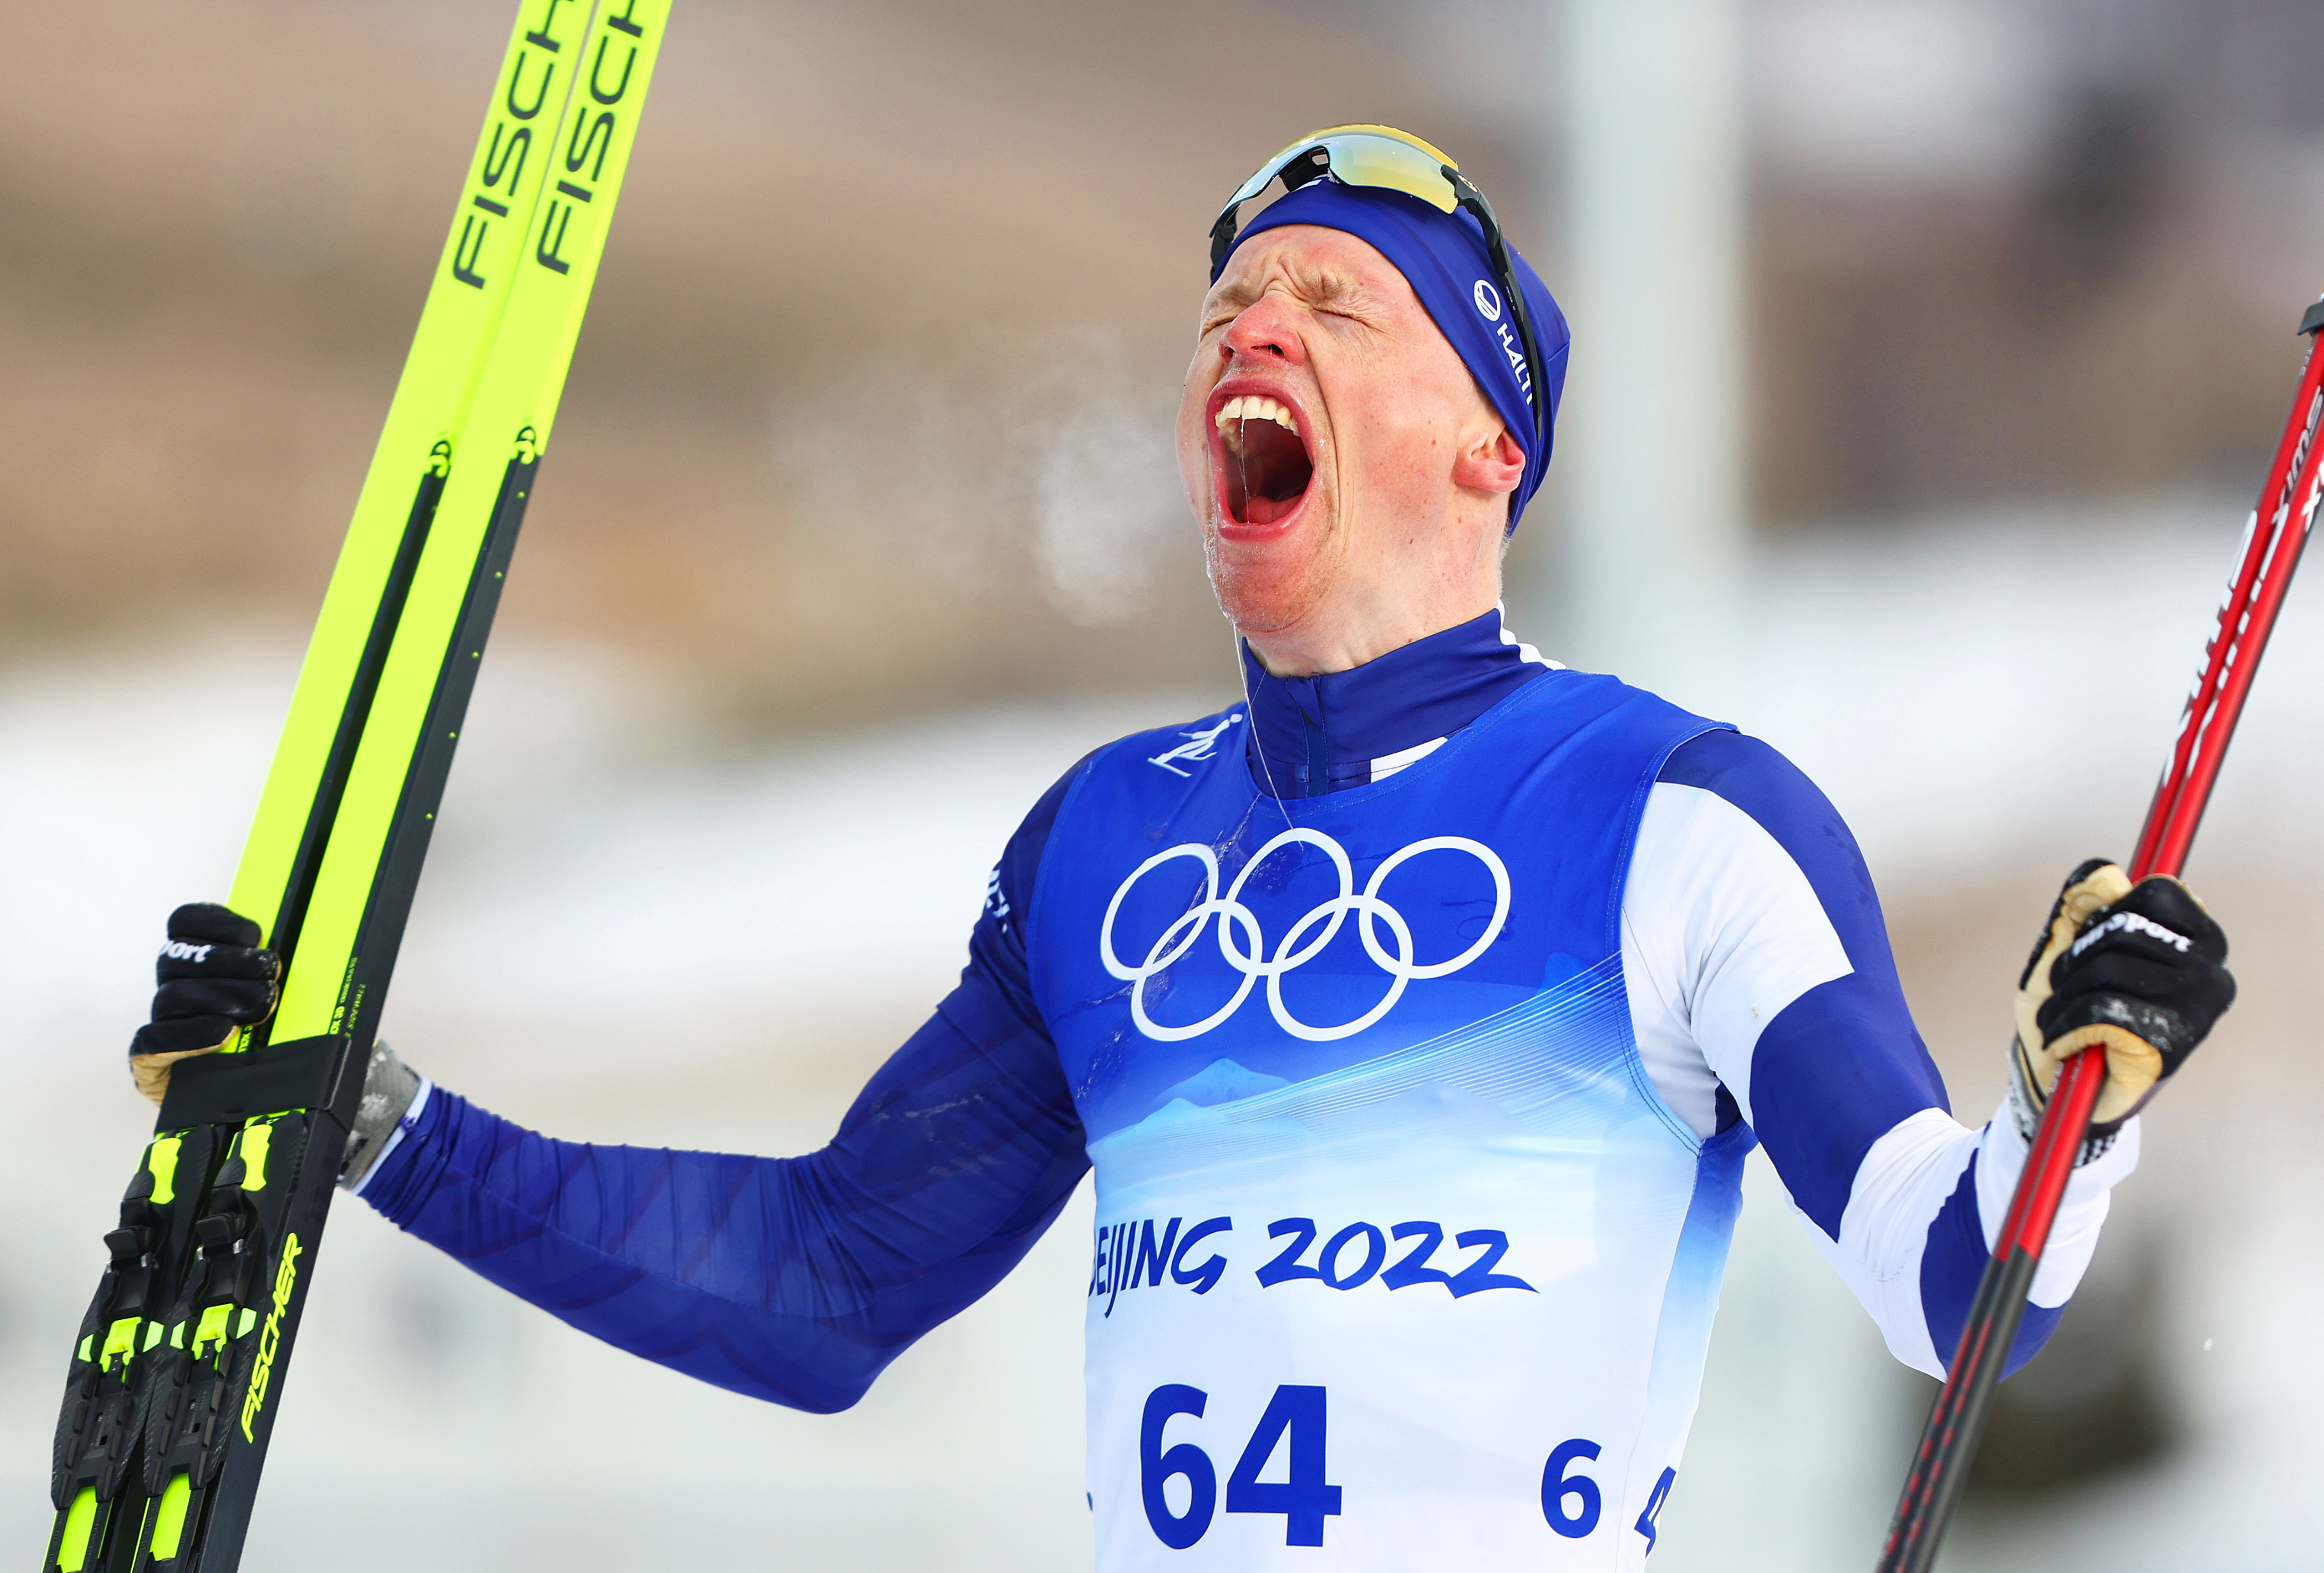 Skier Niskanen won the Finnish gold